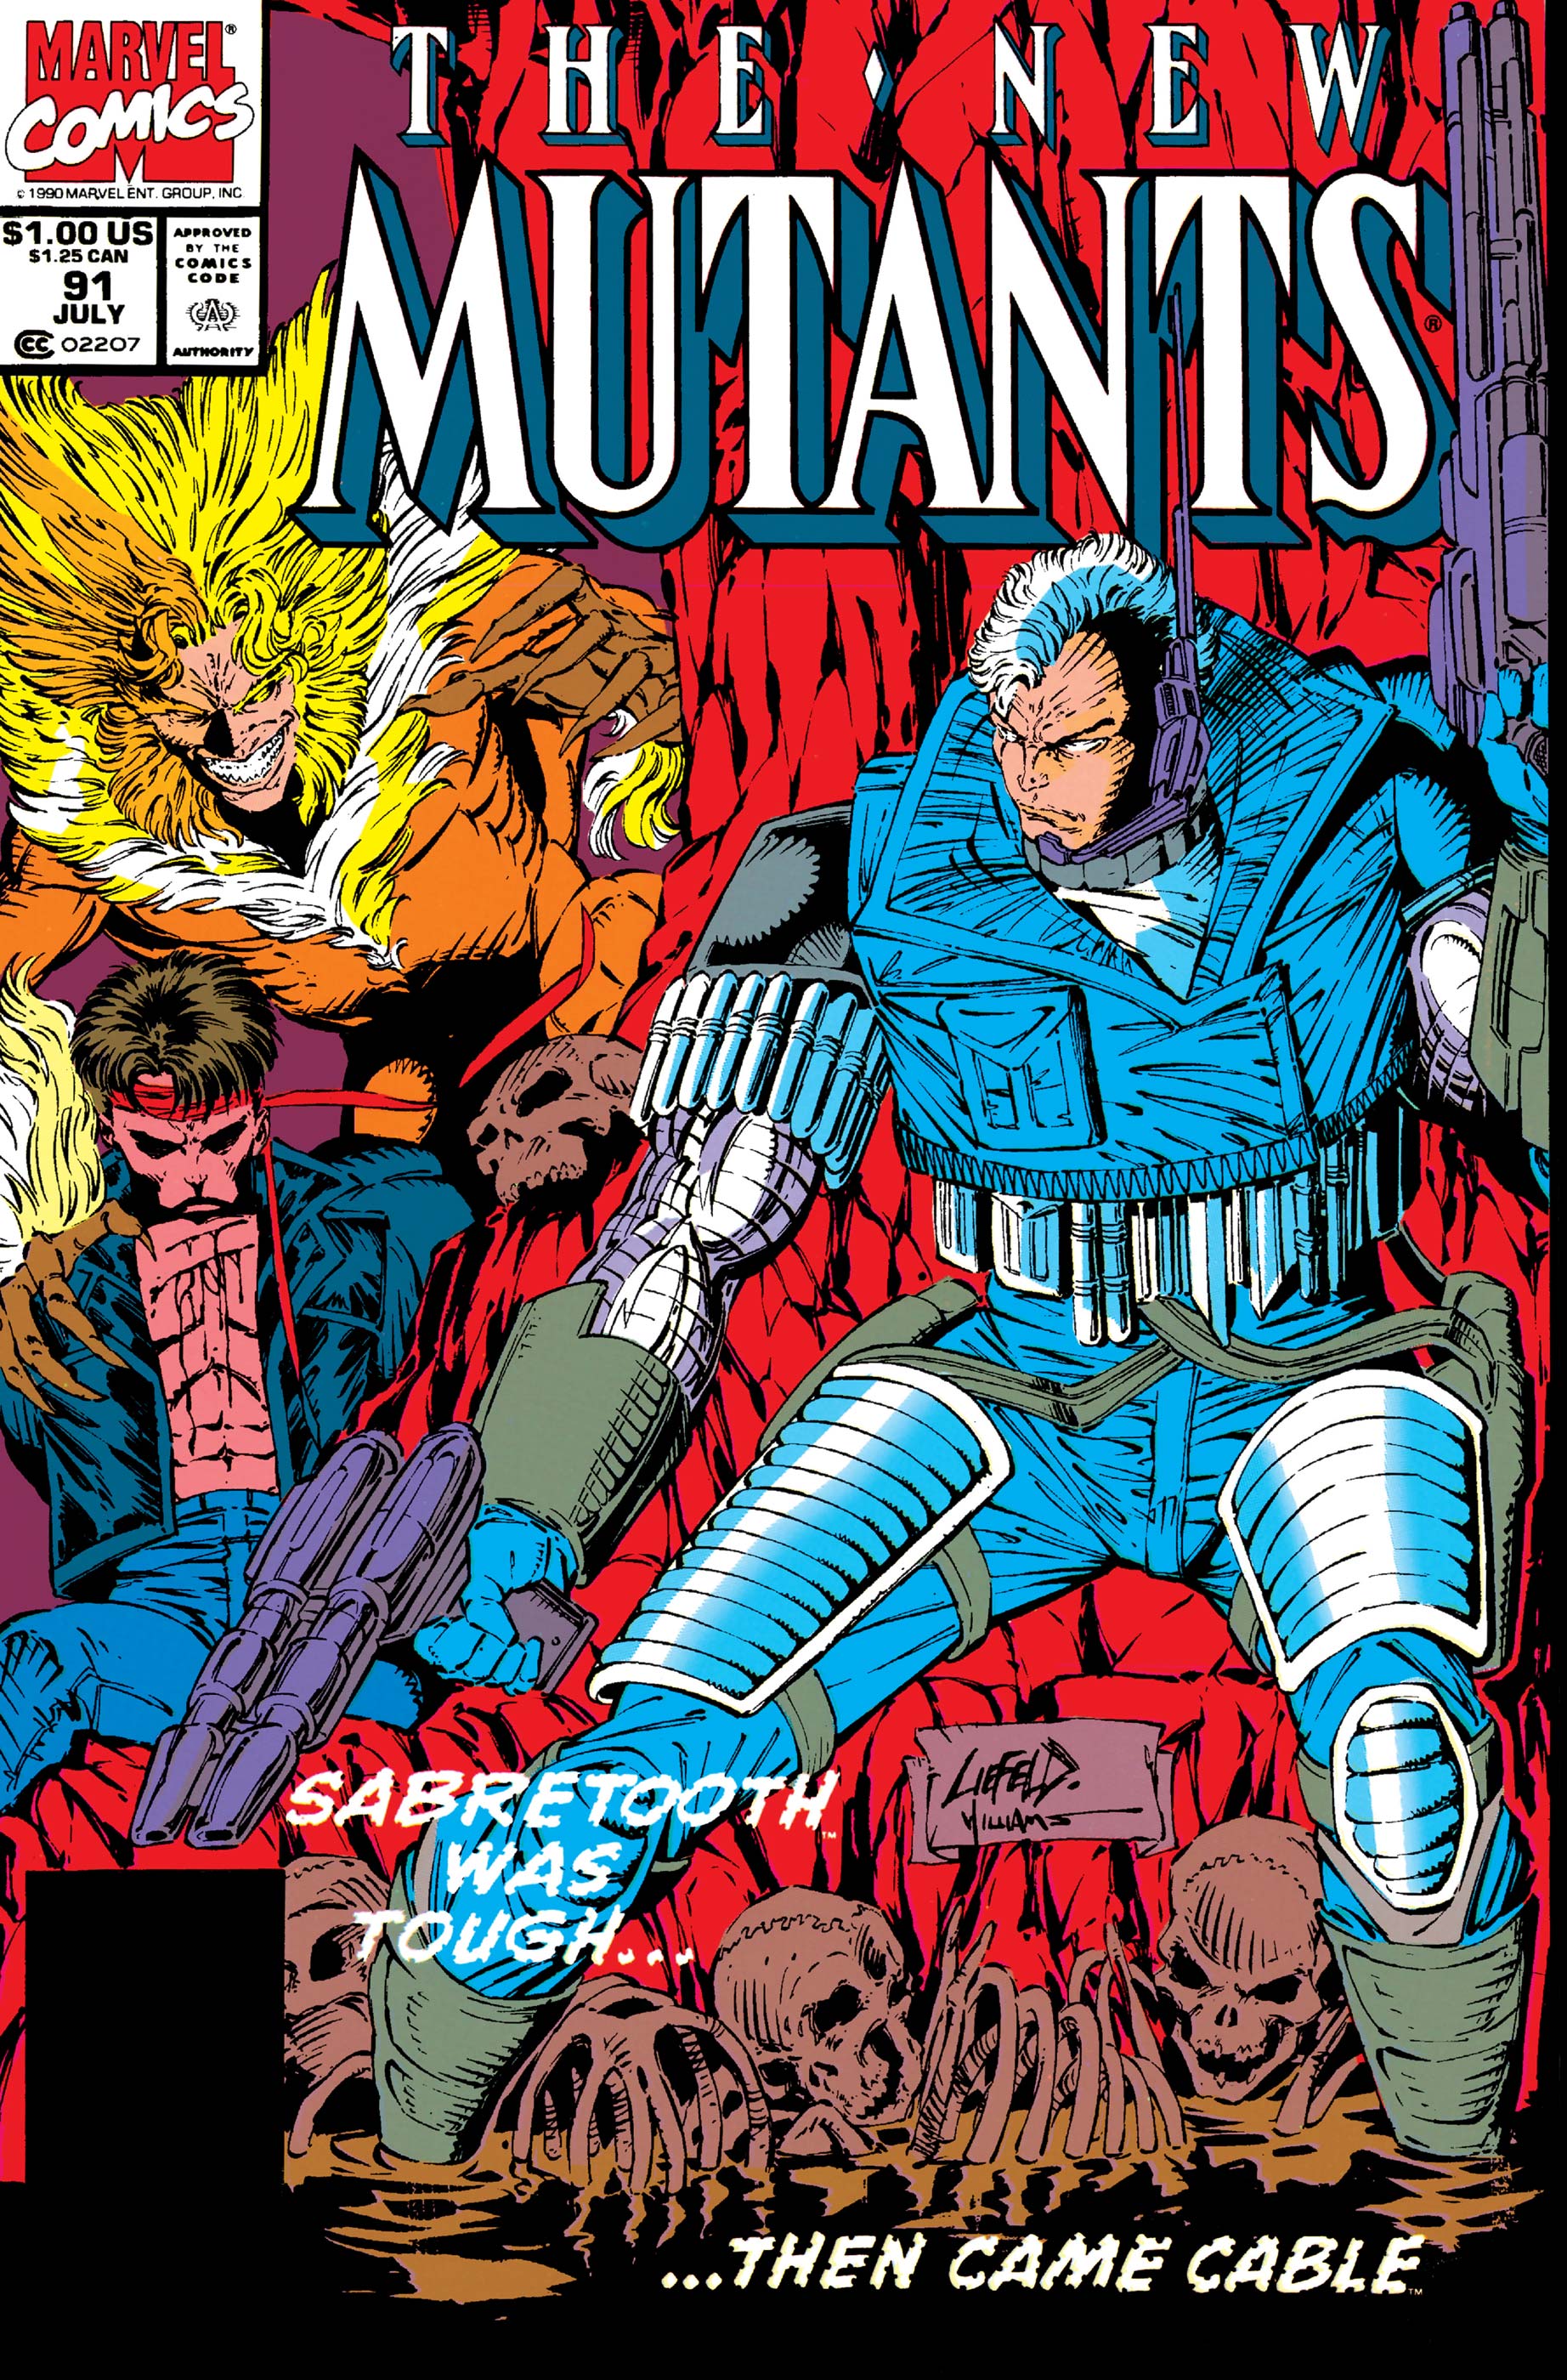 New Mutants (1983) #91